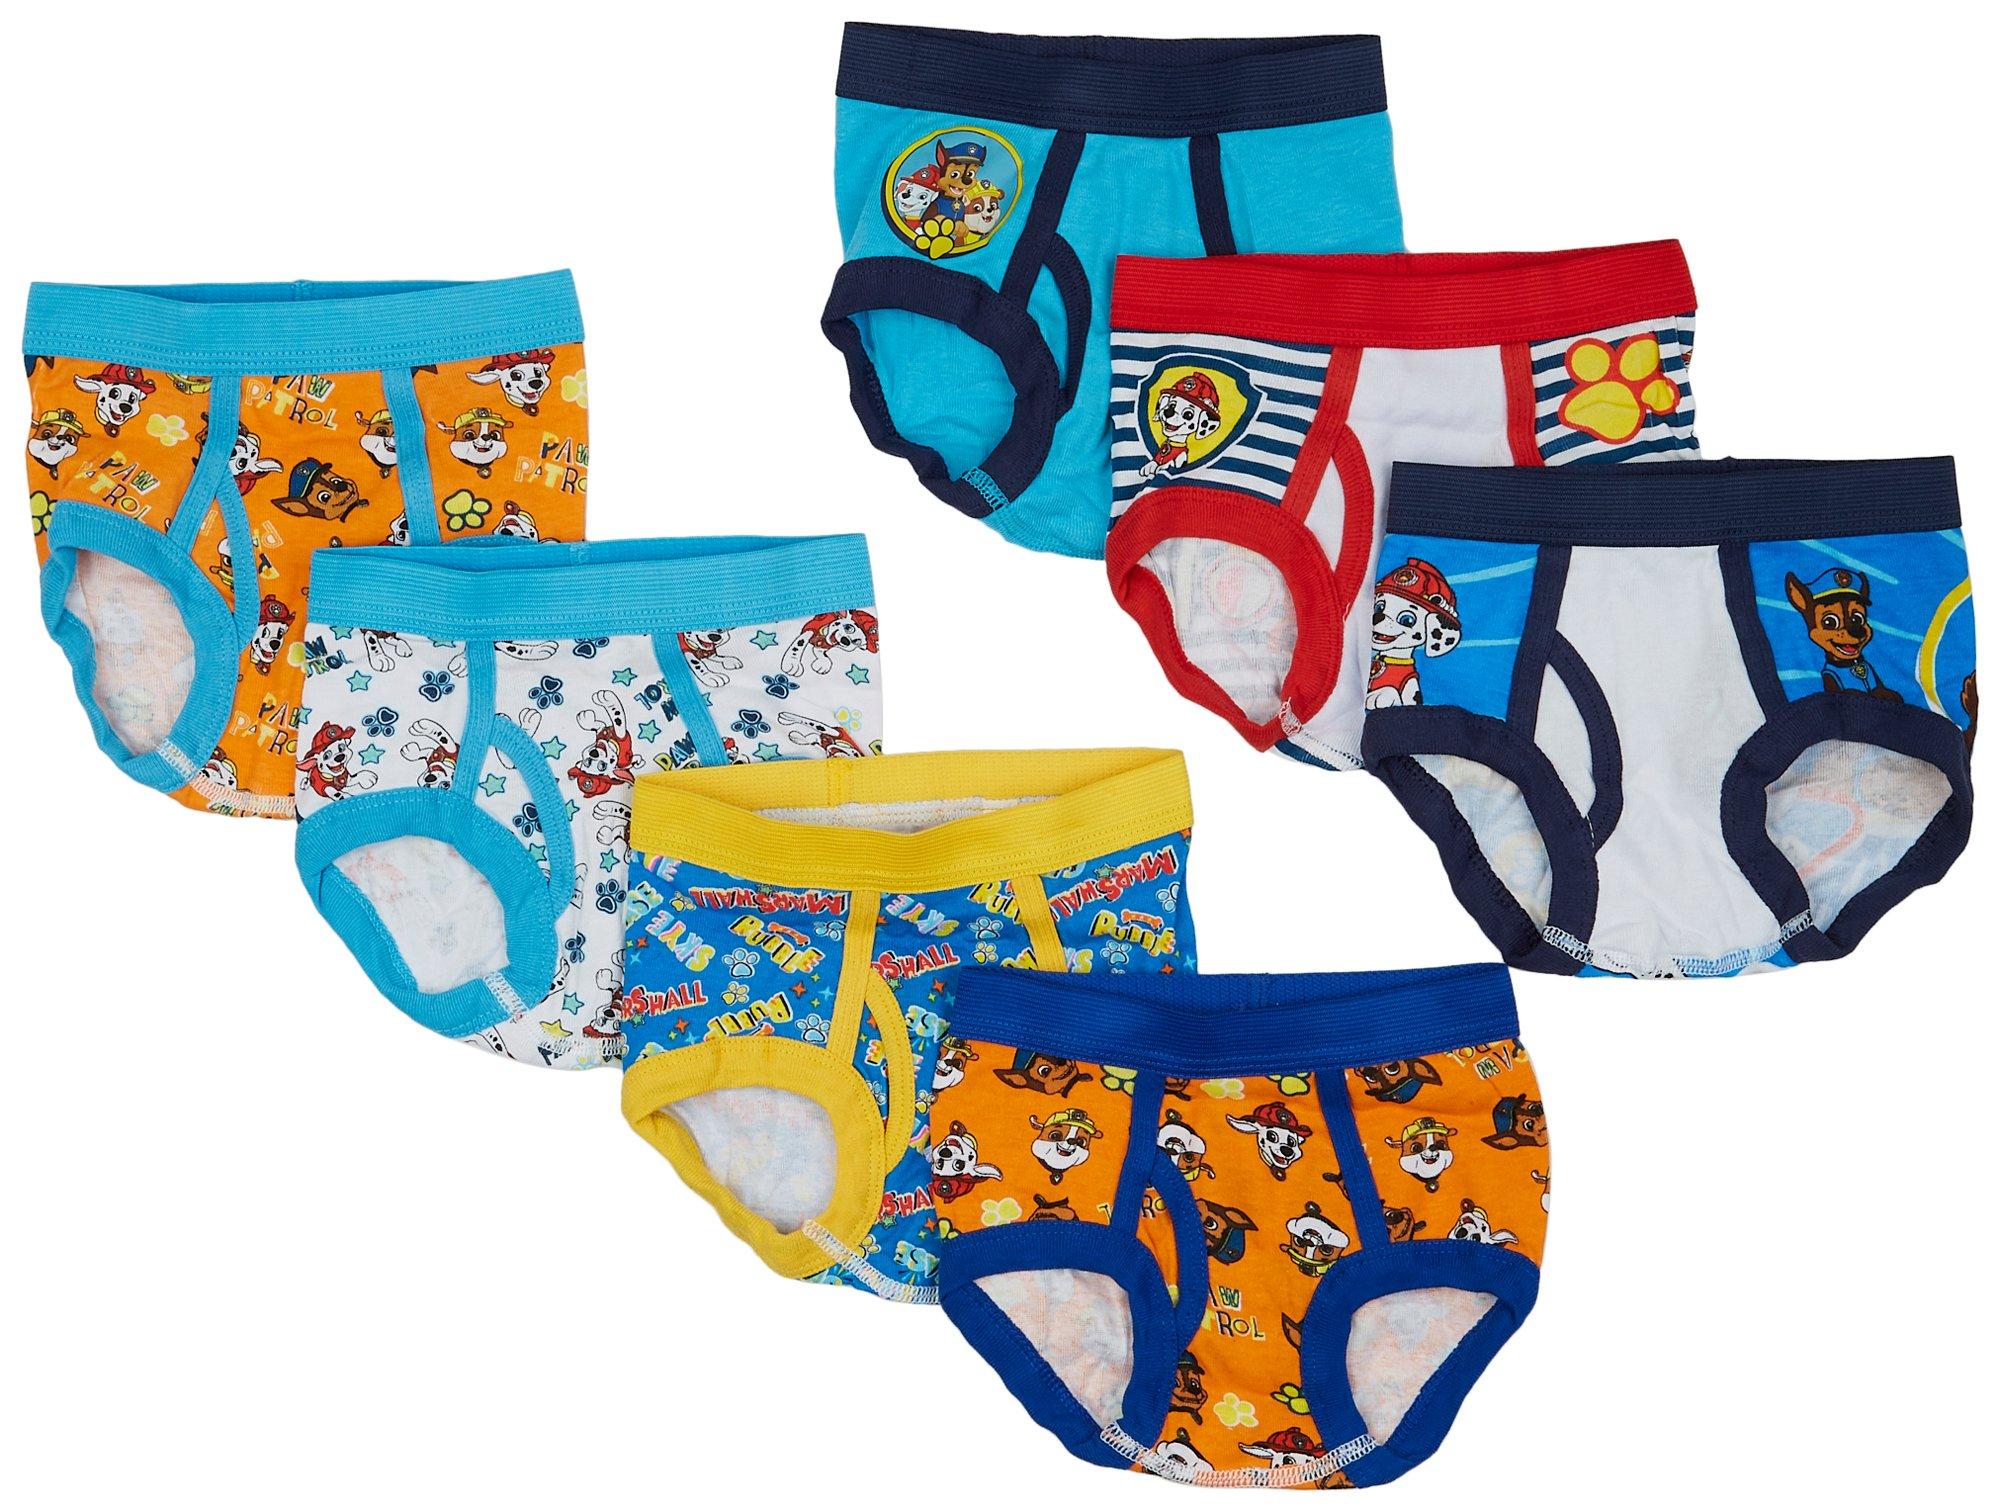 7-Pack BABY SHARK Toddler Girls Size 4T Cotton Briefs Underwear 100% cotton